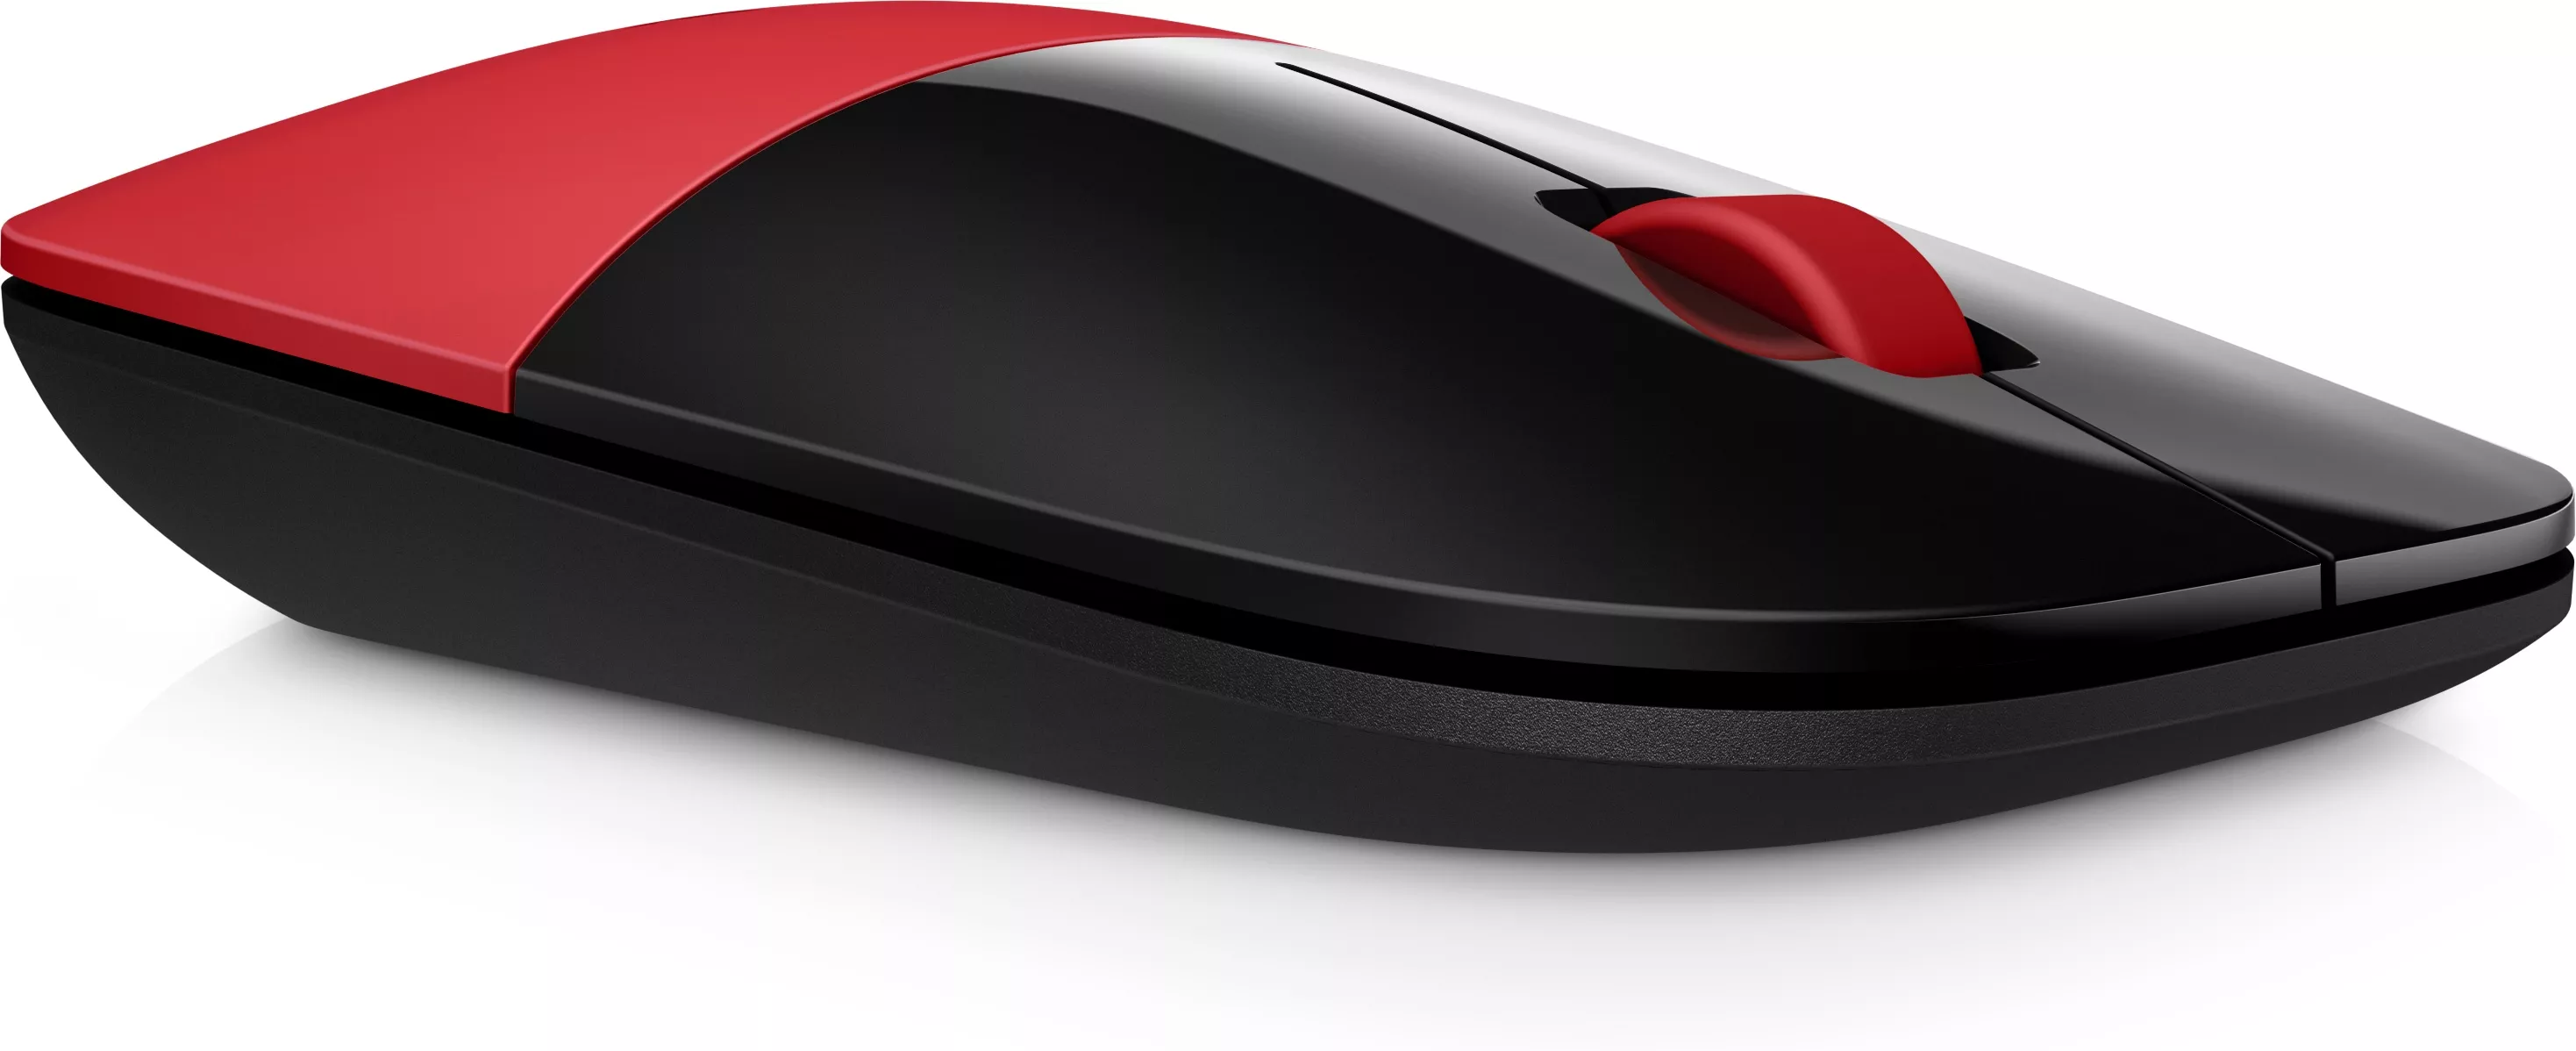 Vente HP Z3700 Wireless Mouse Cardinal Red HP au meilleur prix - visuel 6